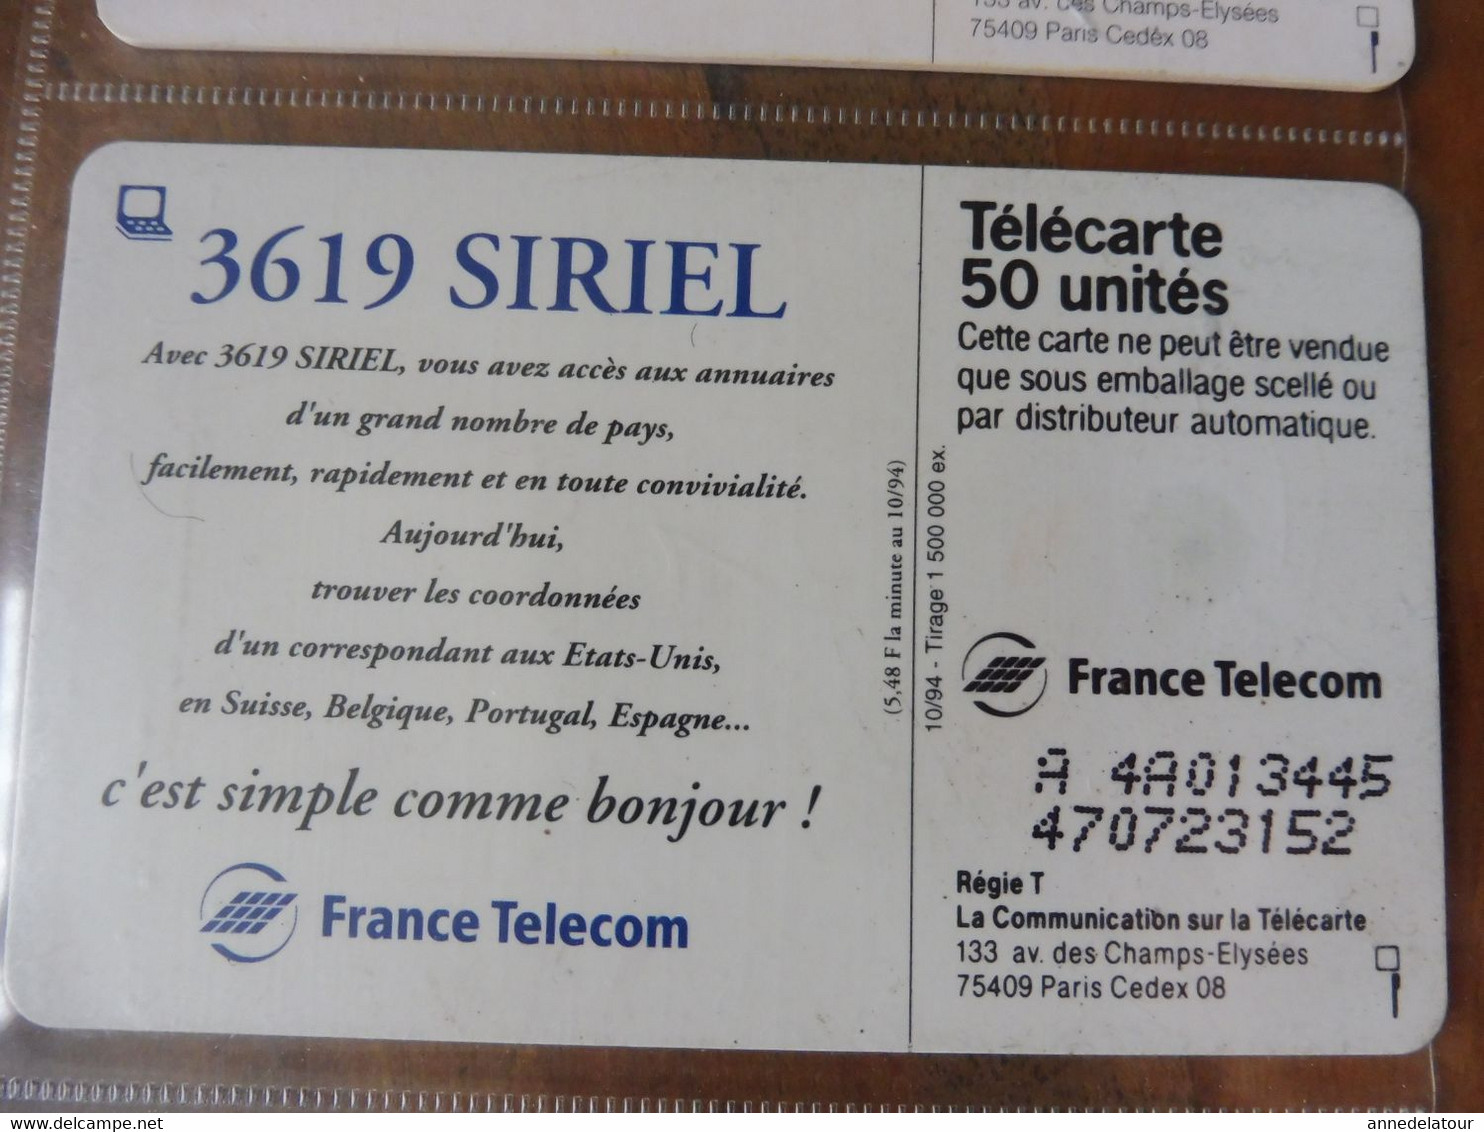 10 télécartes   ( promotion et explications du MINITEL)  FRANCE TELECOM (Magis, Siriel, Le Kiosque de l'Assemblée, etc )